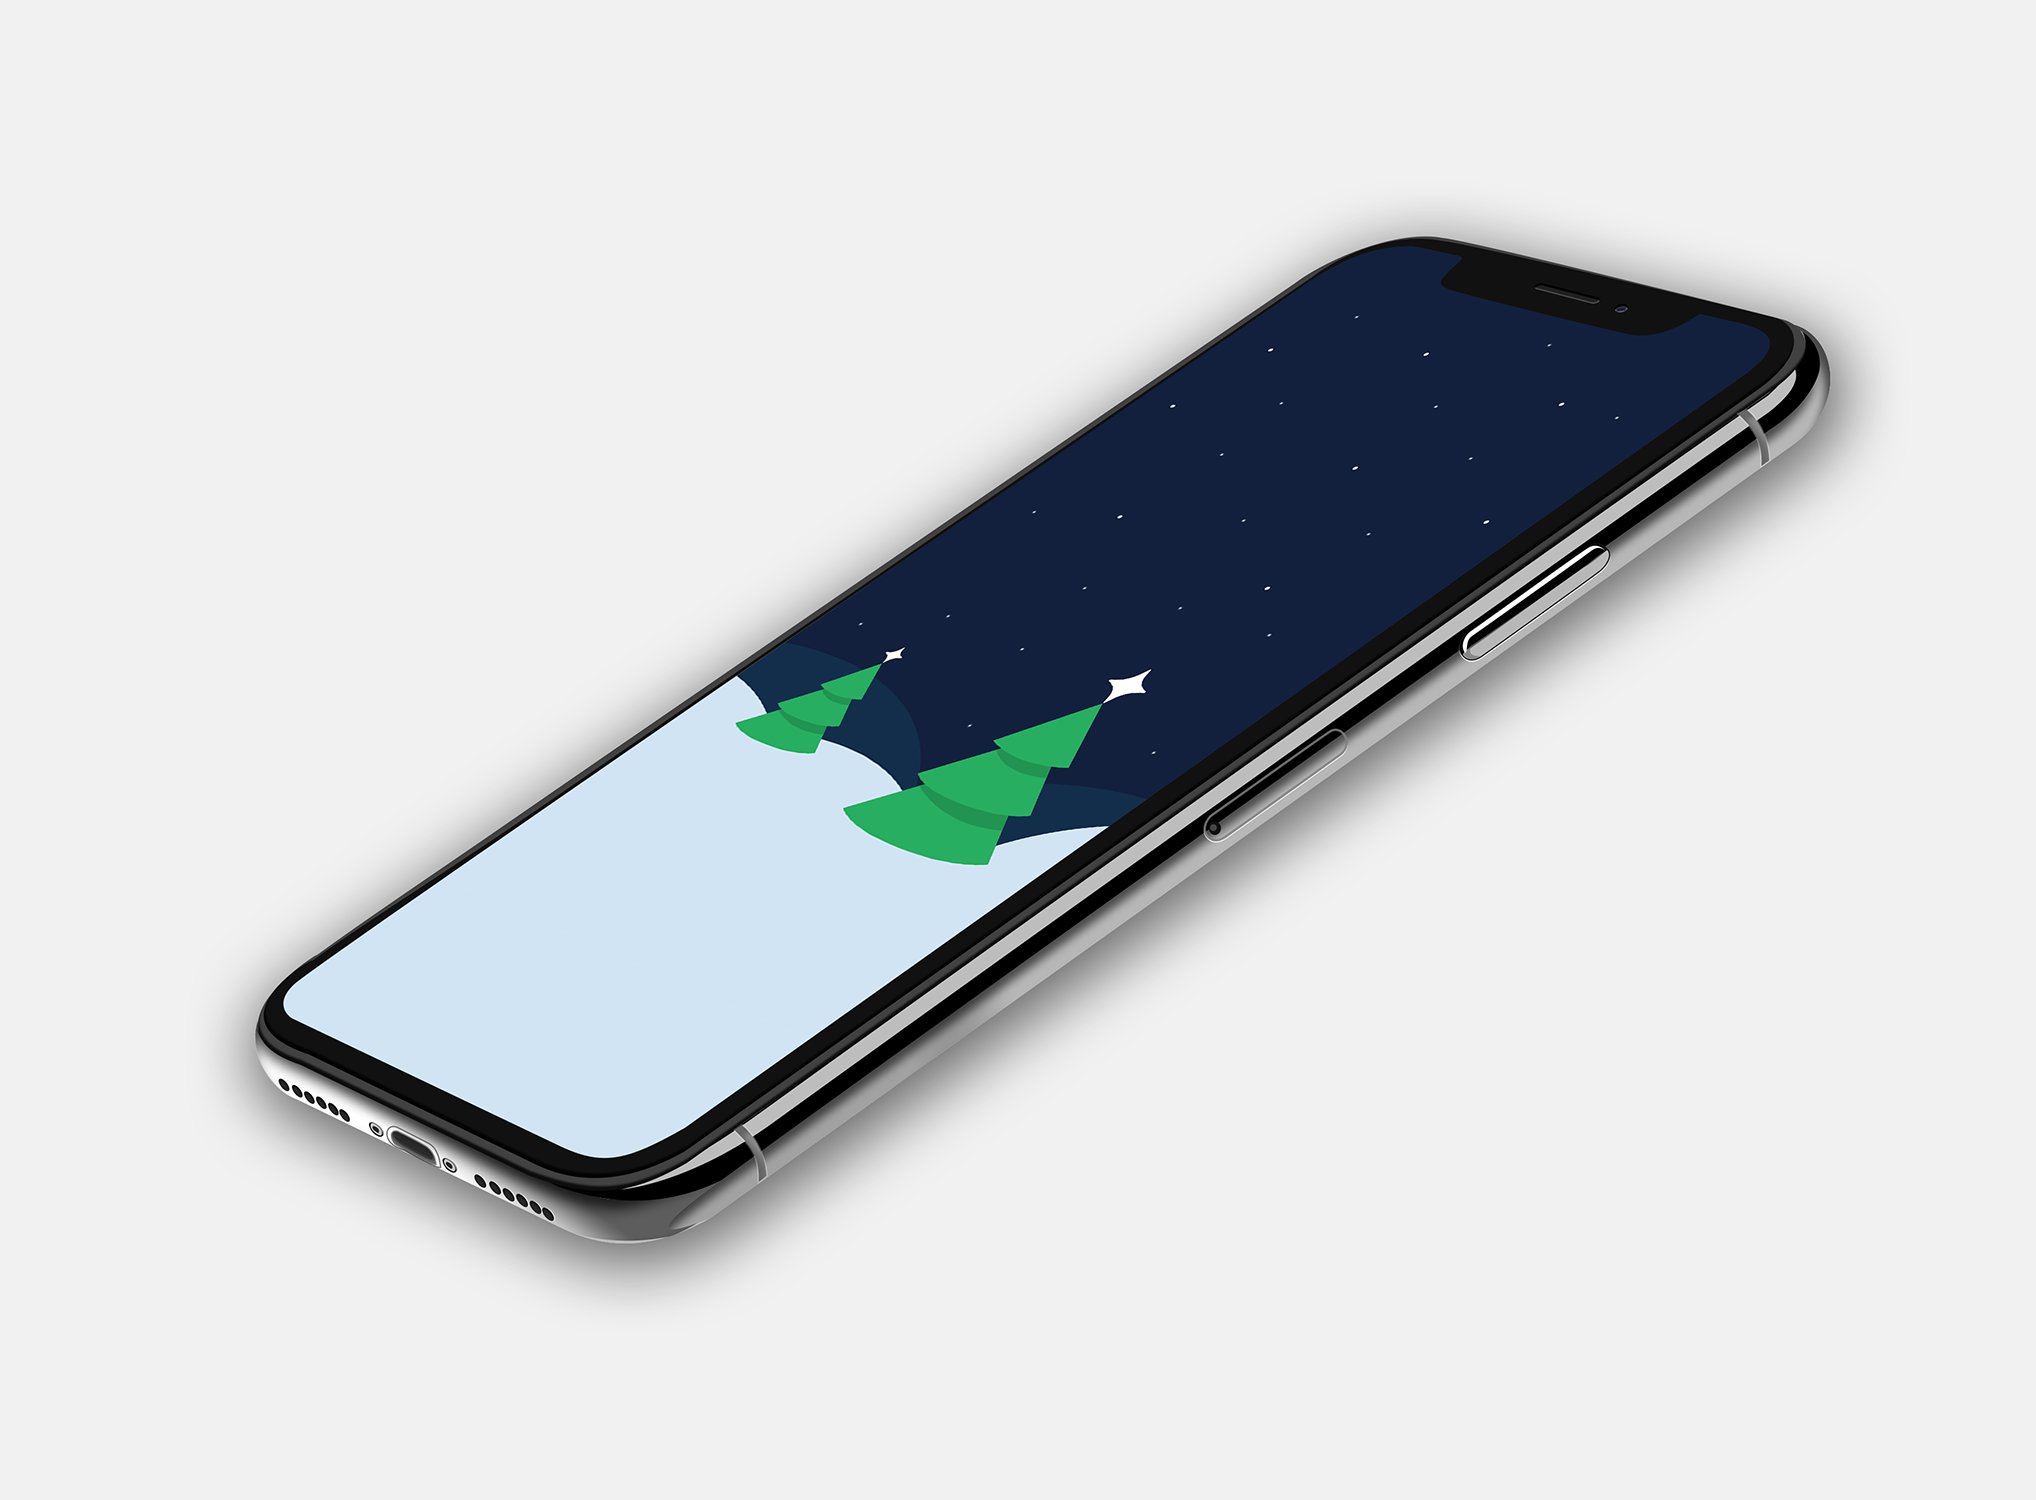 Cách đặt hình nền iPhone theo phong cách iPhone X nhanh chóng nhất   Thegioididongcom